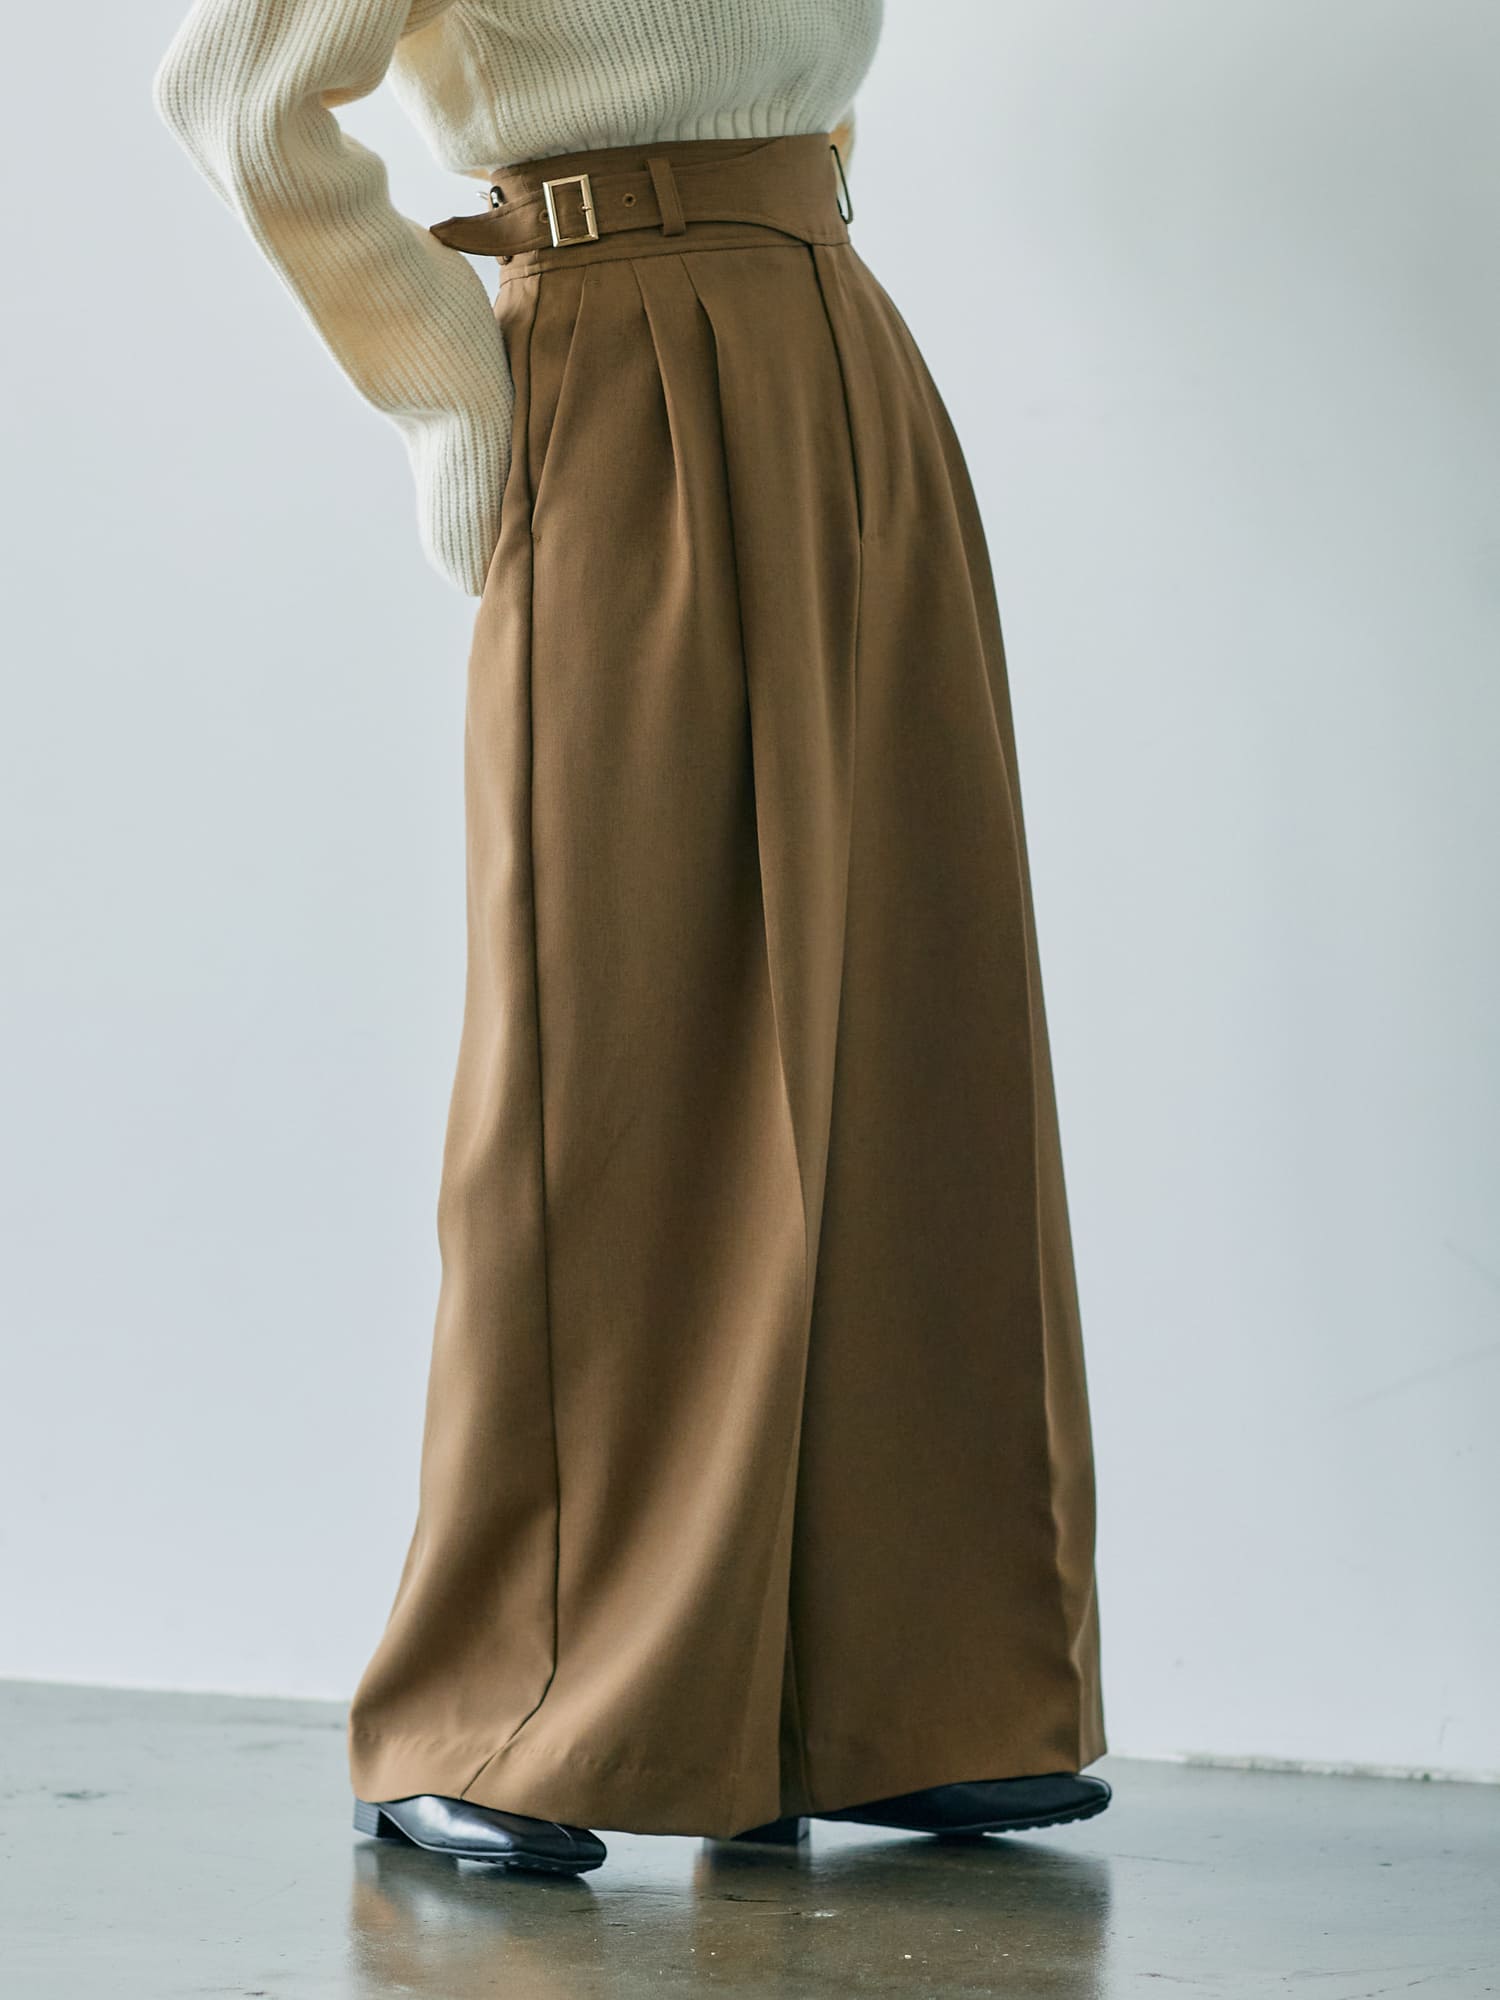 ハイウエストグルカワイドパンツ | 小柄・低身長女性向けファッション